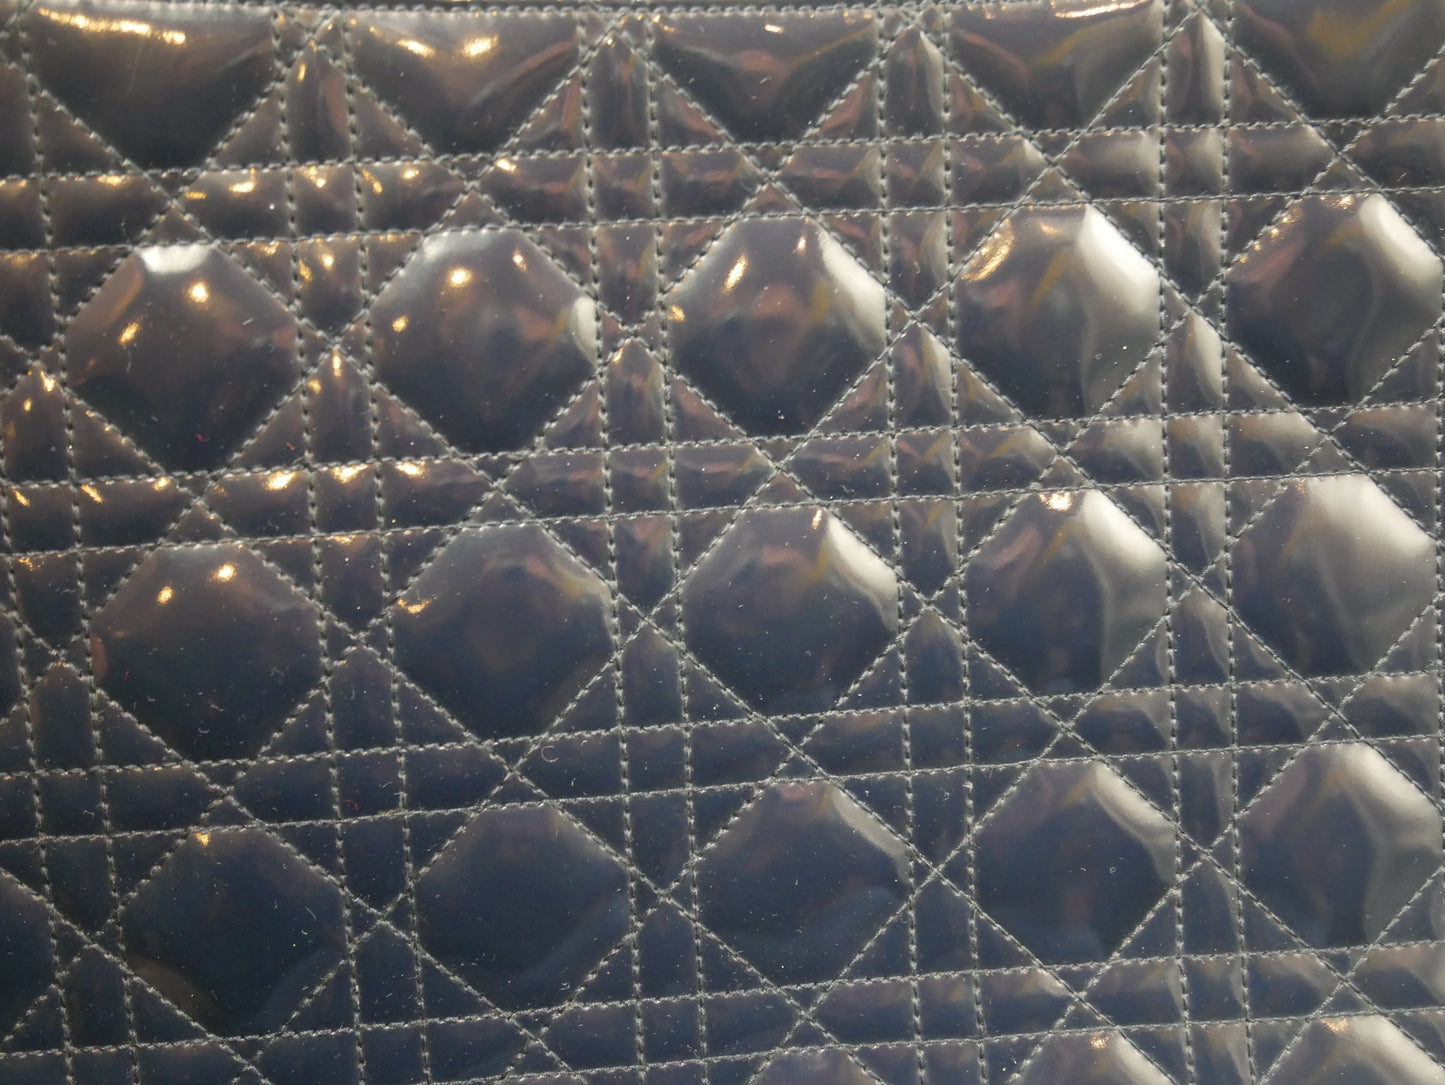 <tc>Christian Dior sac porté épaule matelassé en cannage vintage</tc>